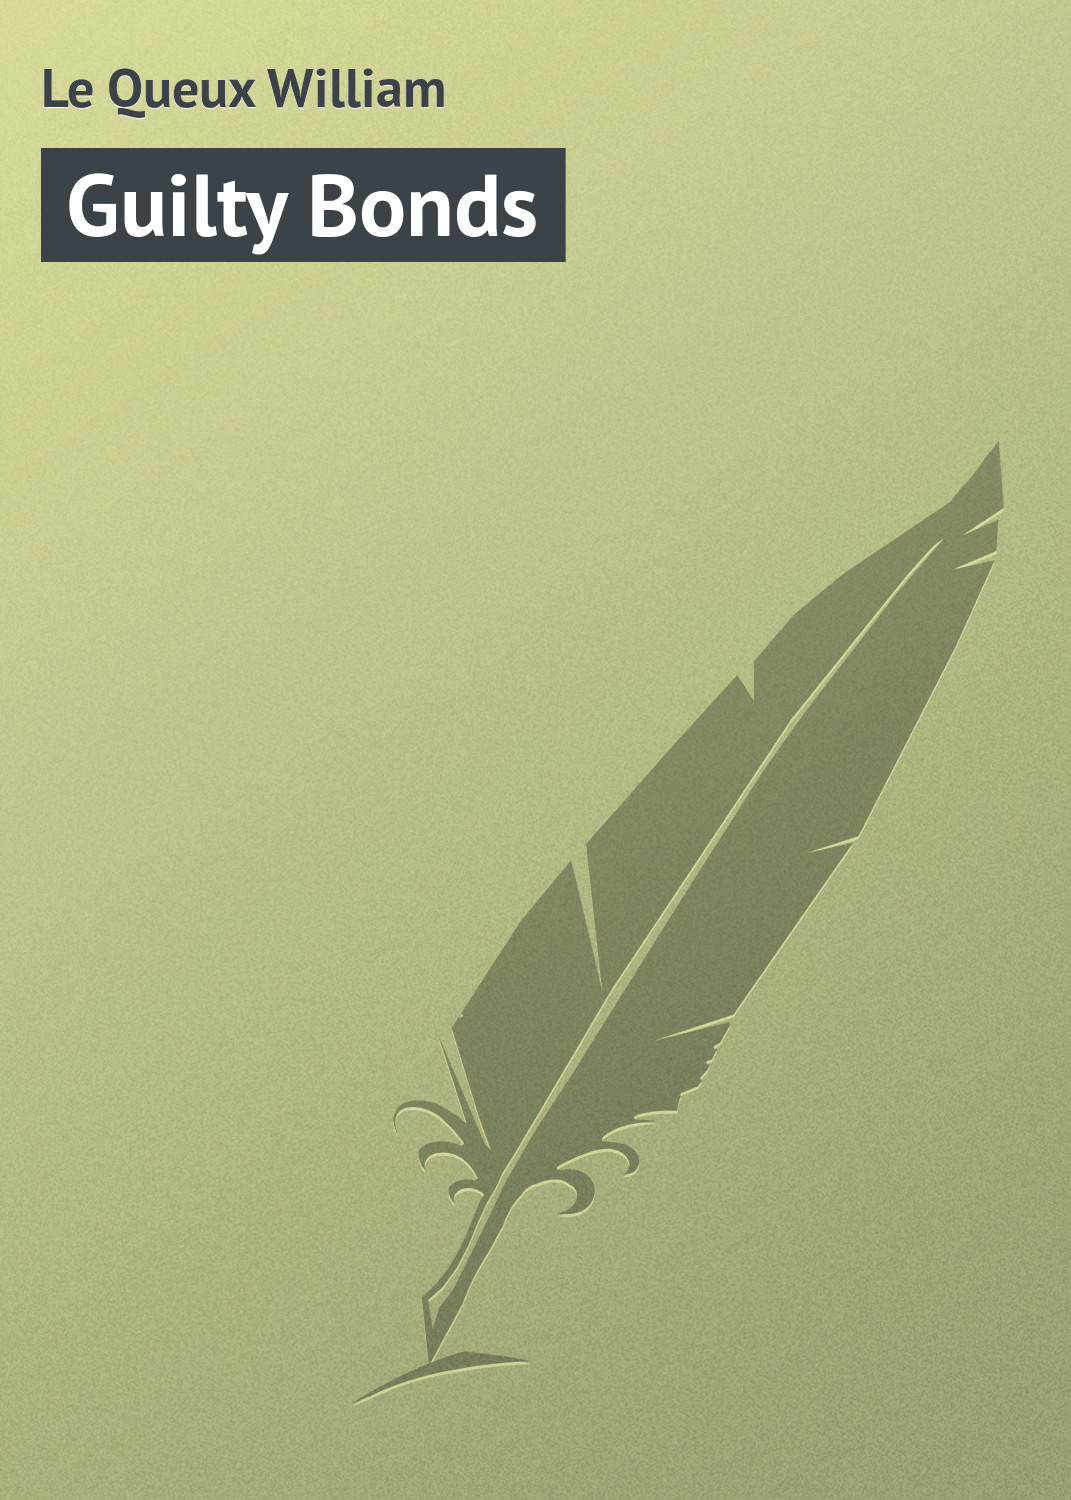 Книга Guilty Bonds из серии , созданная William Le Queux, может относится к жанру Зарубежная классика. Стоимость электронной книги Guilty Bonds с идентификатором 23160331 составляет 5.99 руб.